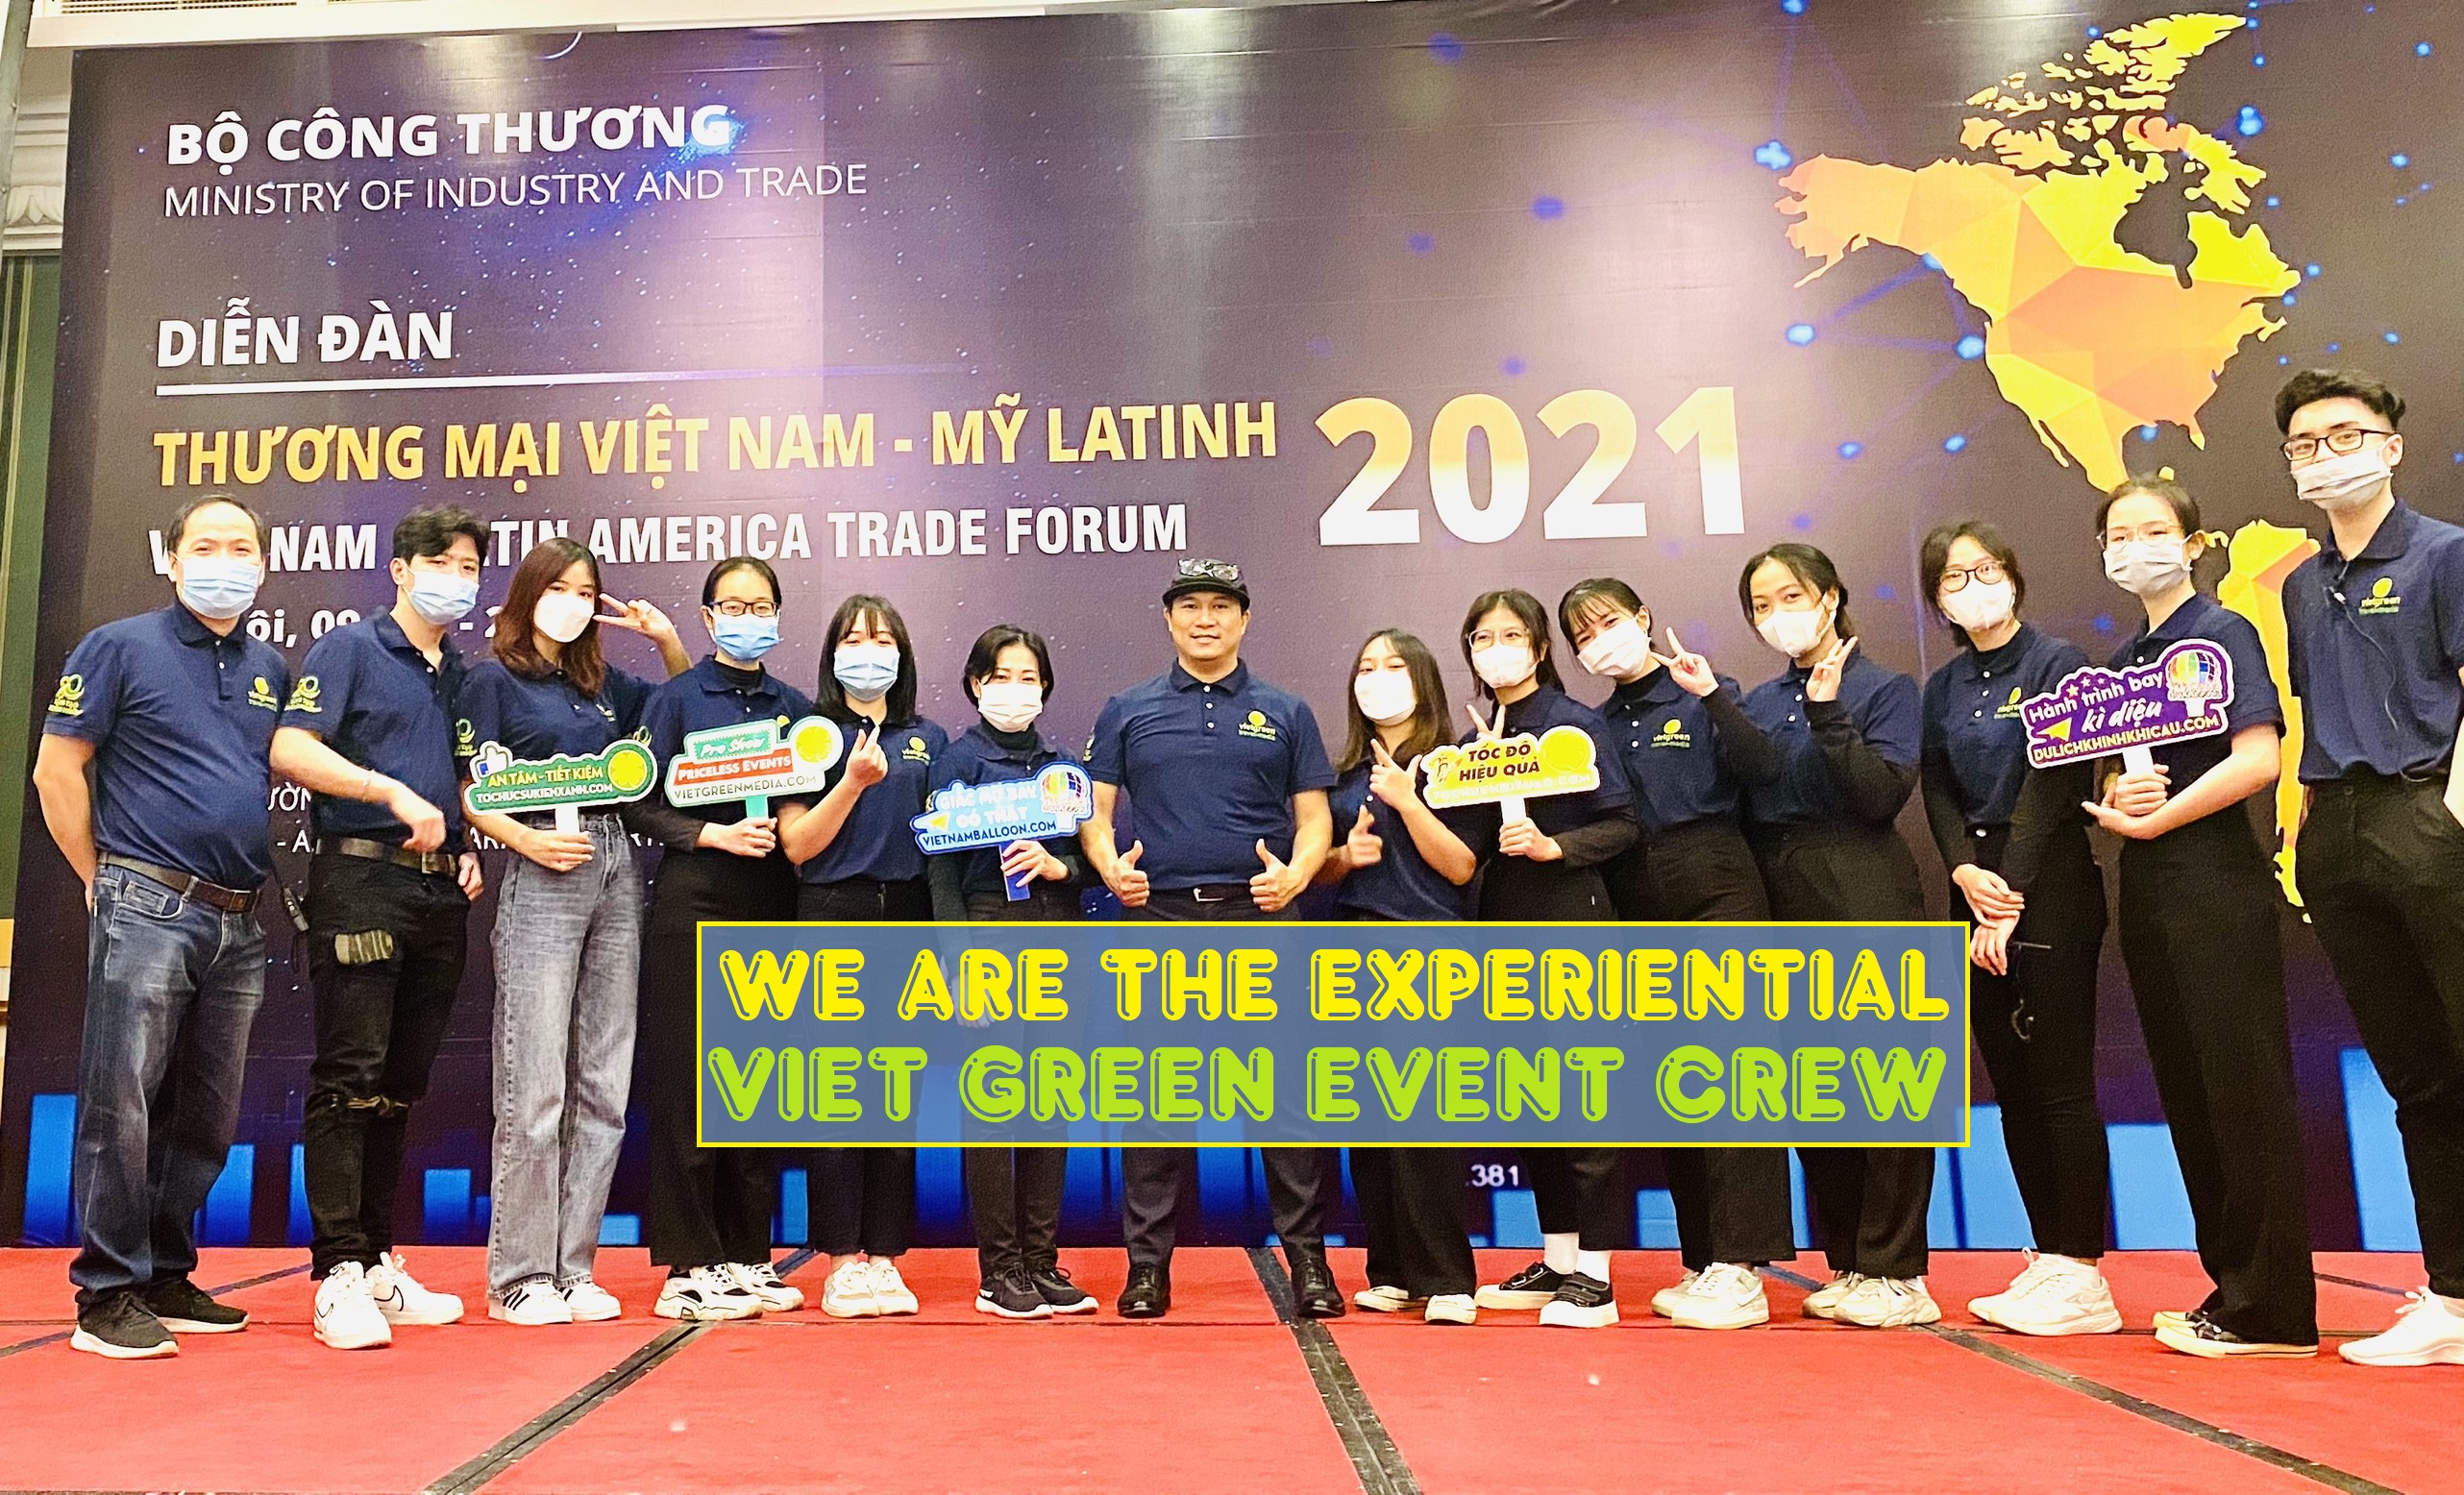 Viet Green Media, Cho thuê nhóm nhảy Led tại Tuyên Quang, cho thuê nhóm nhảy đèn Led tại Tuyên Quang, Sự Kiện Xanh